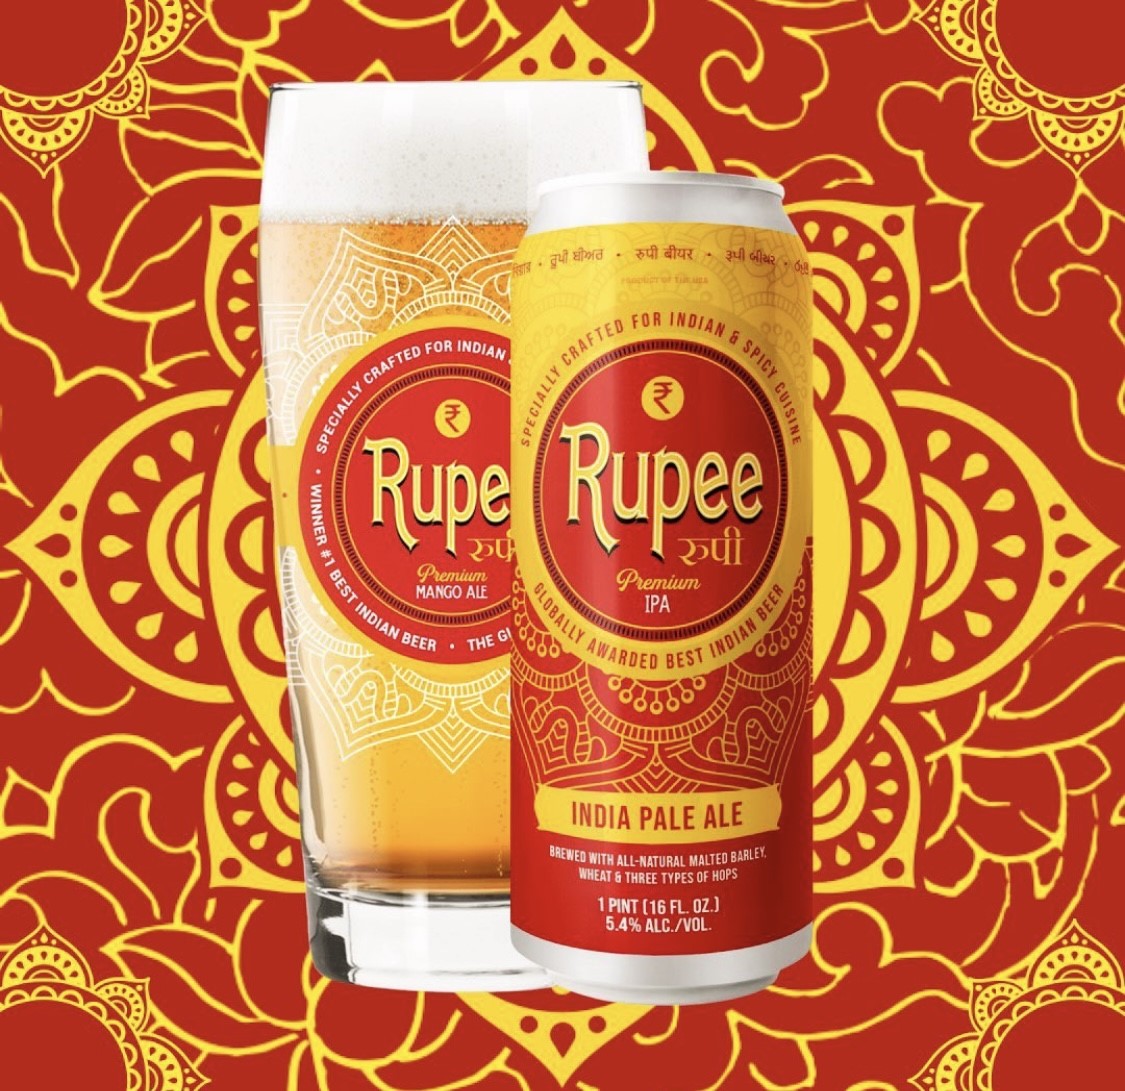 Rupee Beer IPA, image credit Rupee Beer